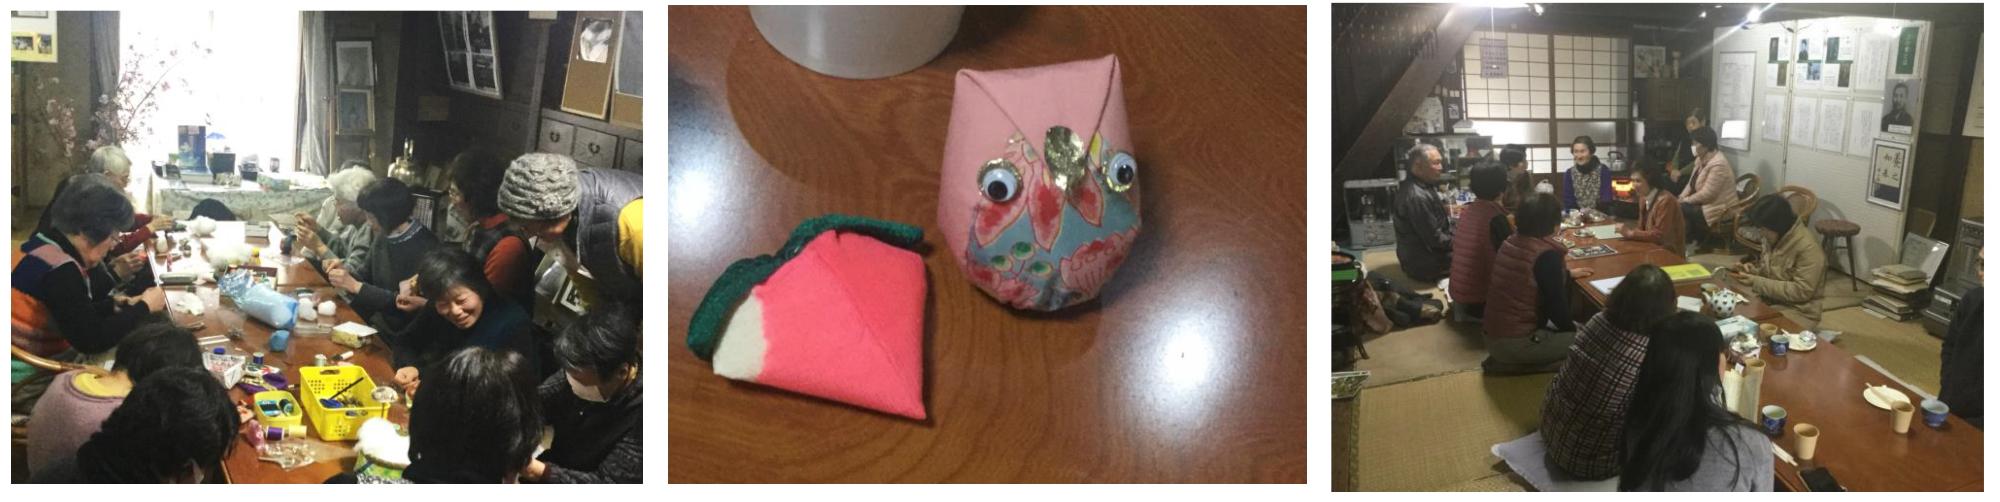 （左）上の家の手芸教室で針と糸を使い縫物をしている参加者の方々の写真、（中）手芸教室で作られたフクロウをモチーフにしたピンク色のマスコットの写真、（右）上の家でお茶を楽しみながら談笑している様子の写真